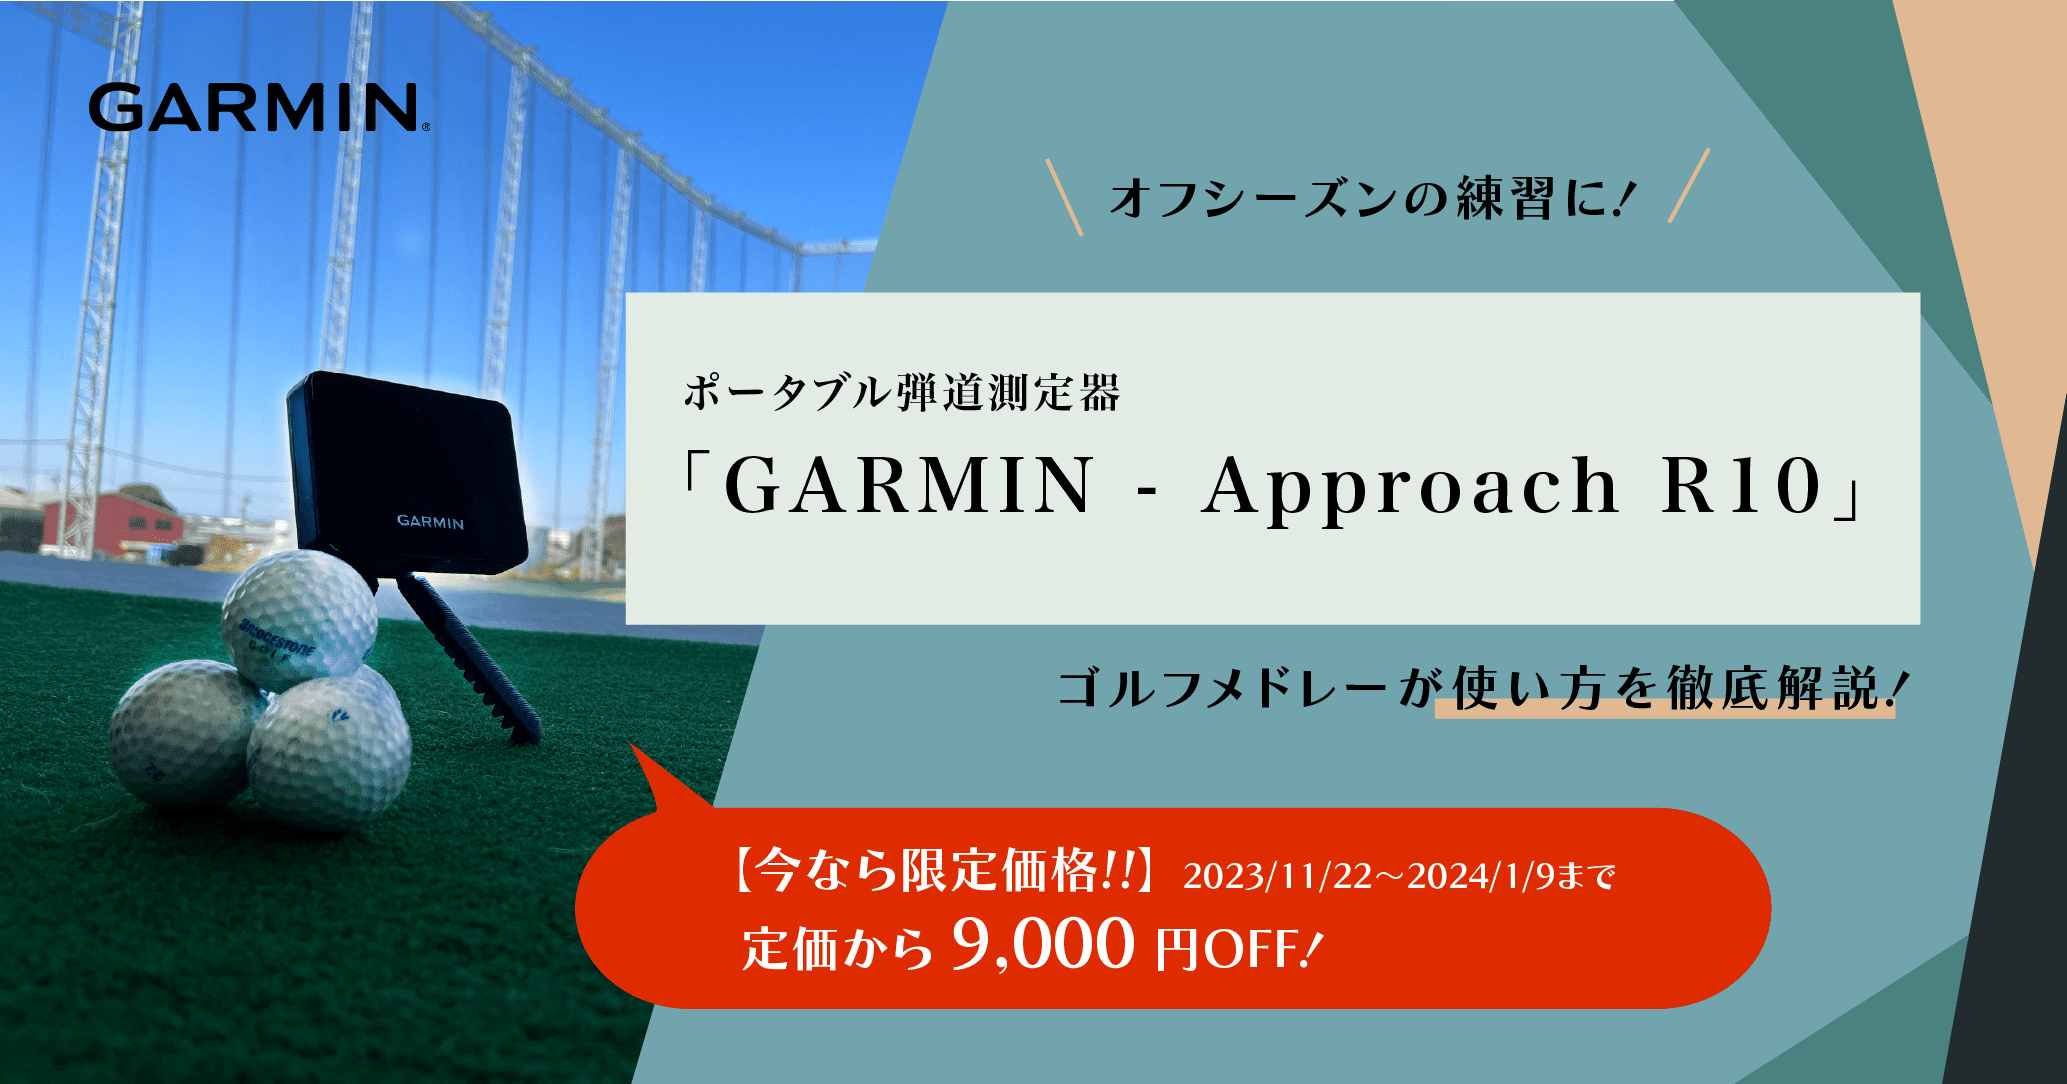 GARMIN Approach R10(ガーミン アプローチ R10)弾道測定器